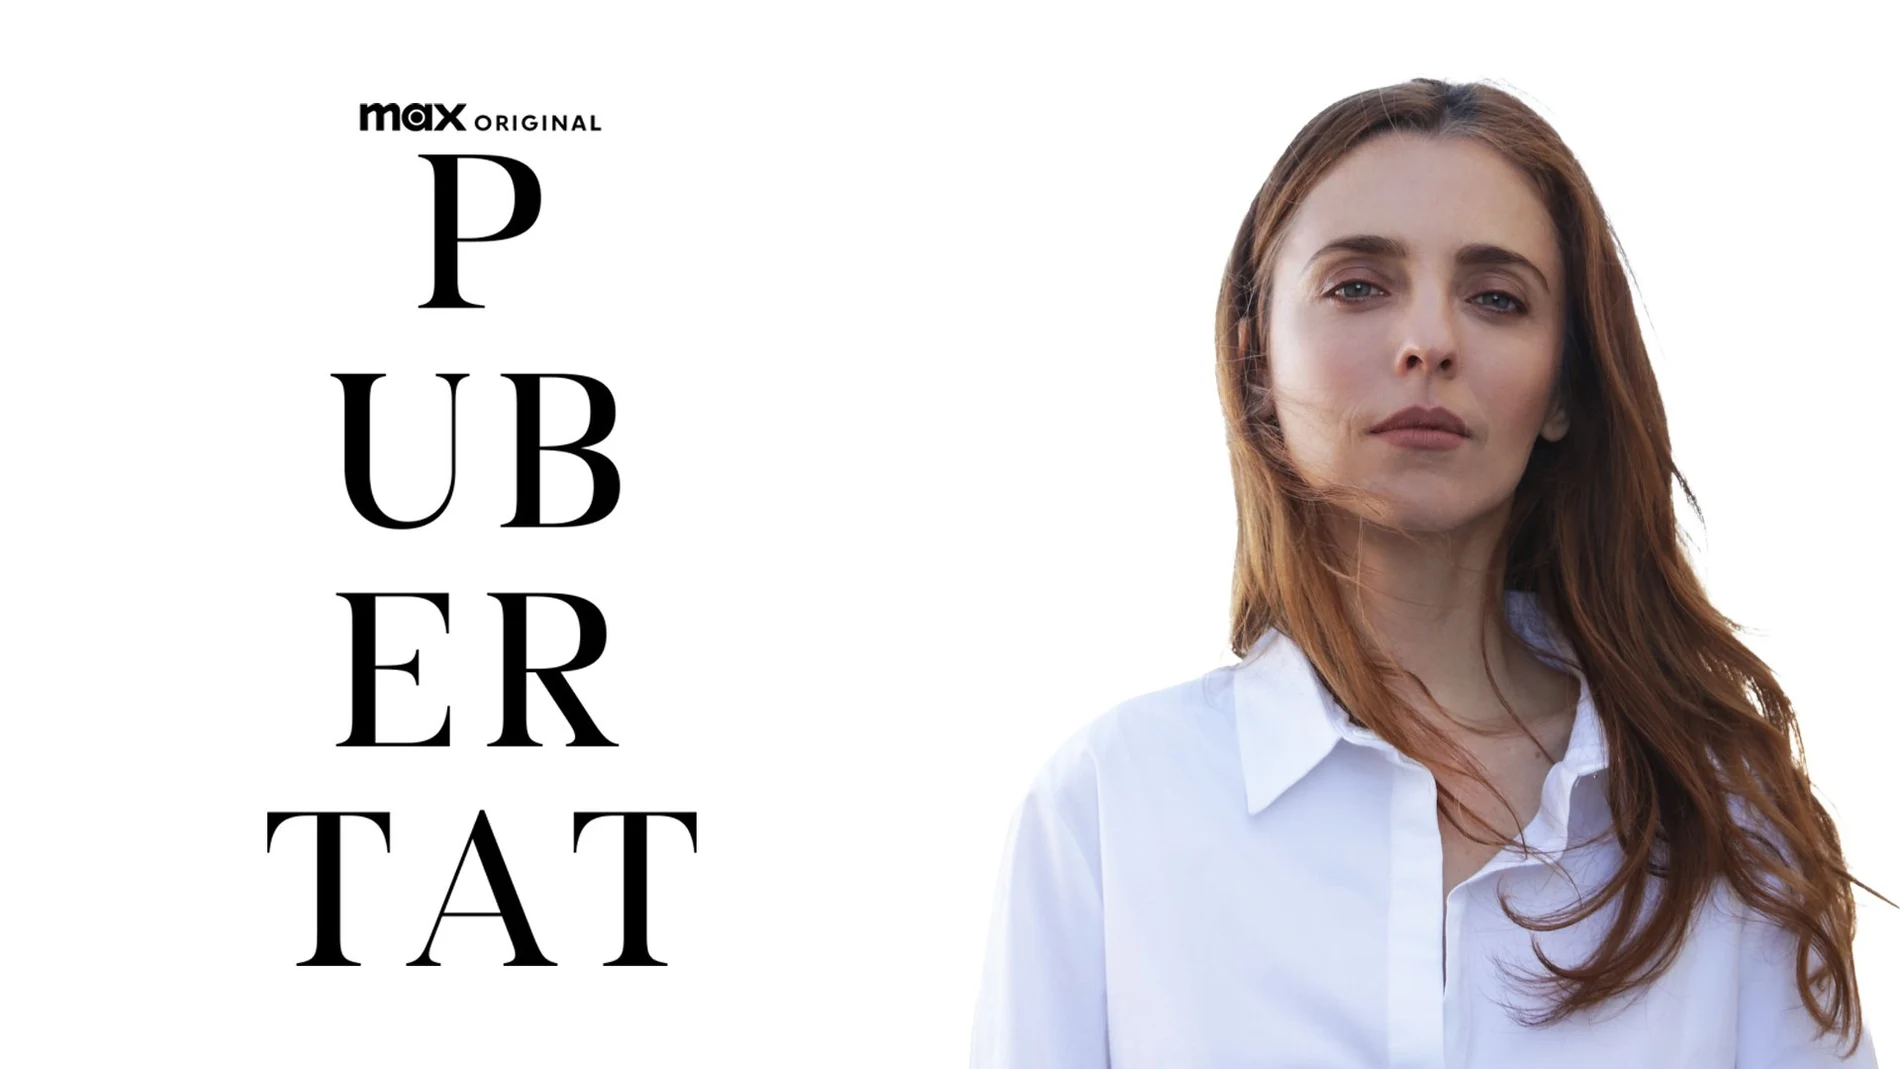 HBO Max anuncia 'Pubertat', el nuevo proyecto de Leticia Dolera sobre los tabúes en la adolescencia